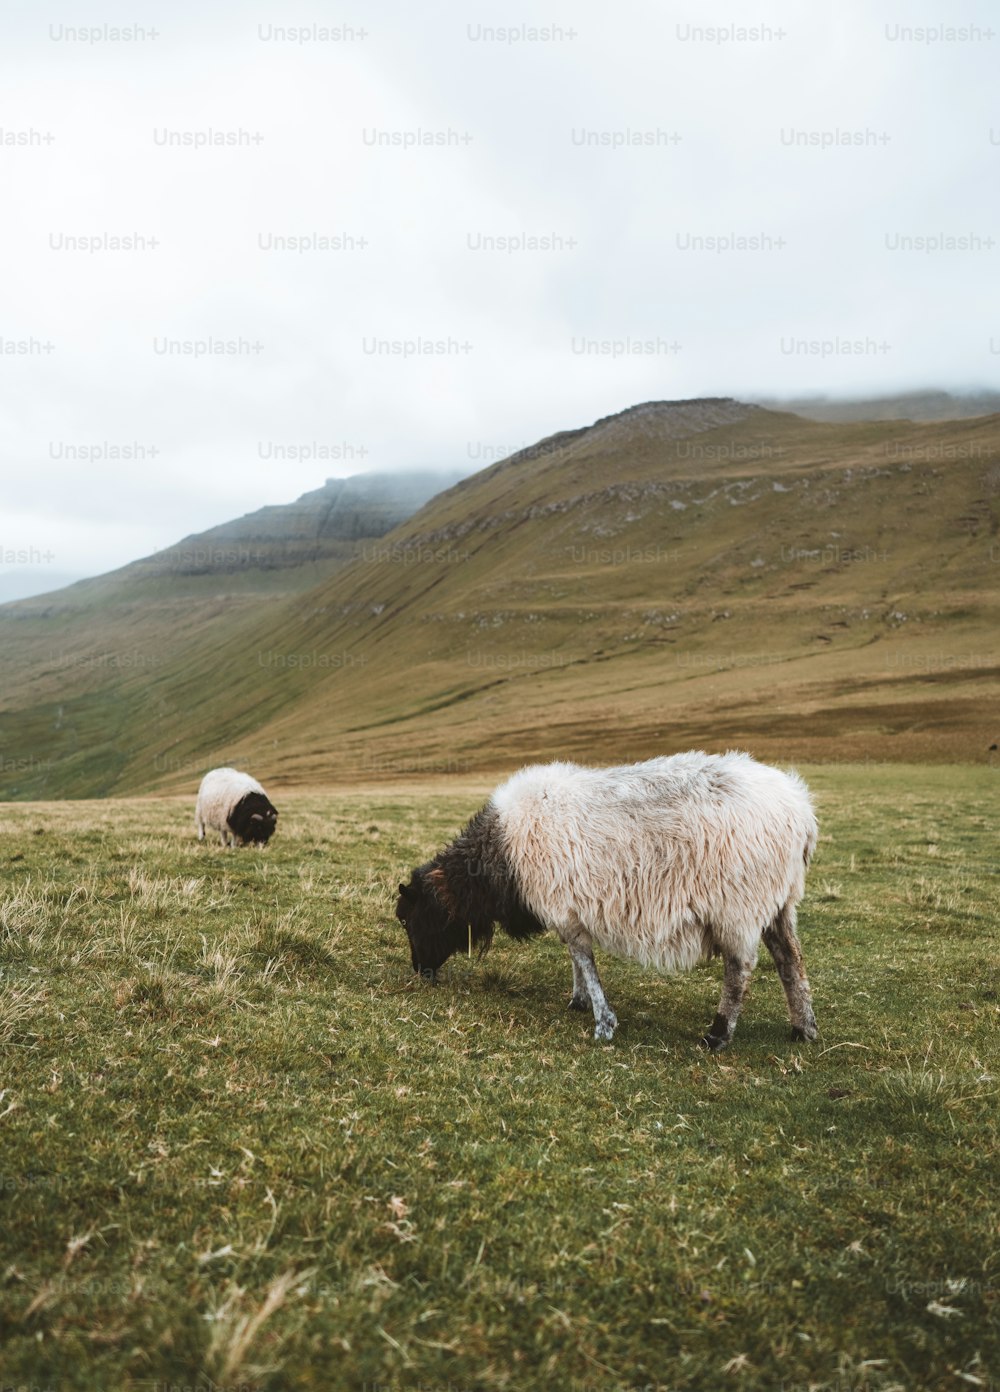 Ein paar Schafe stehen auf einem üppigen grünen Feld